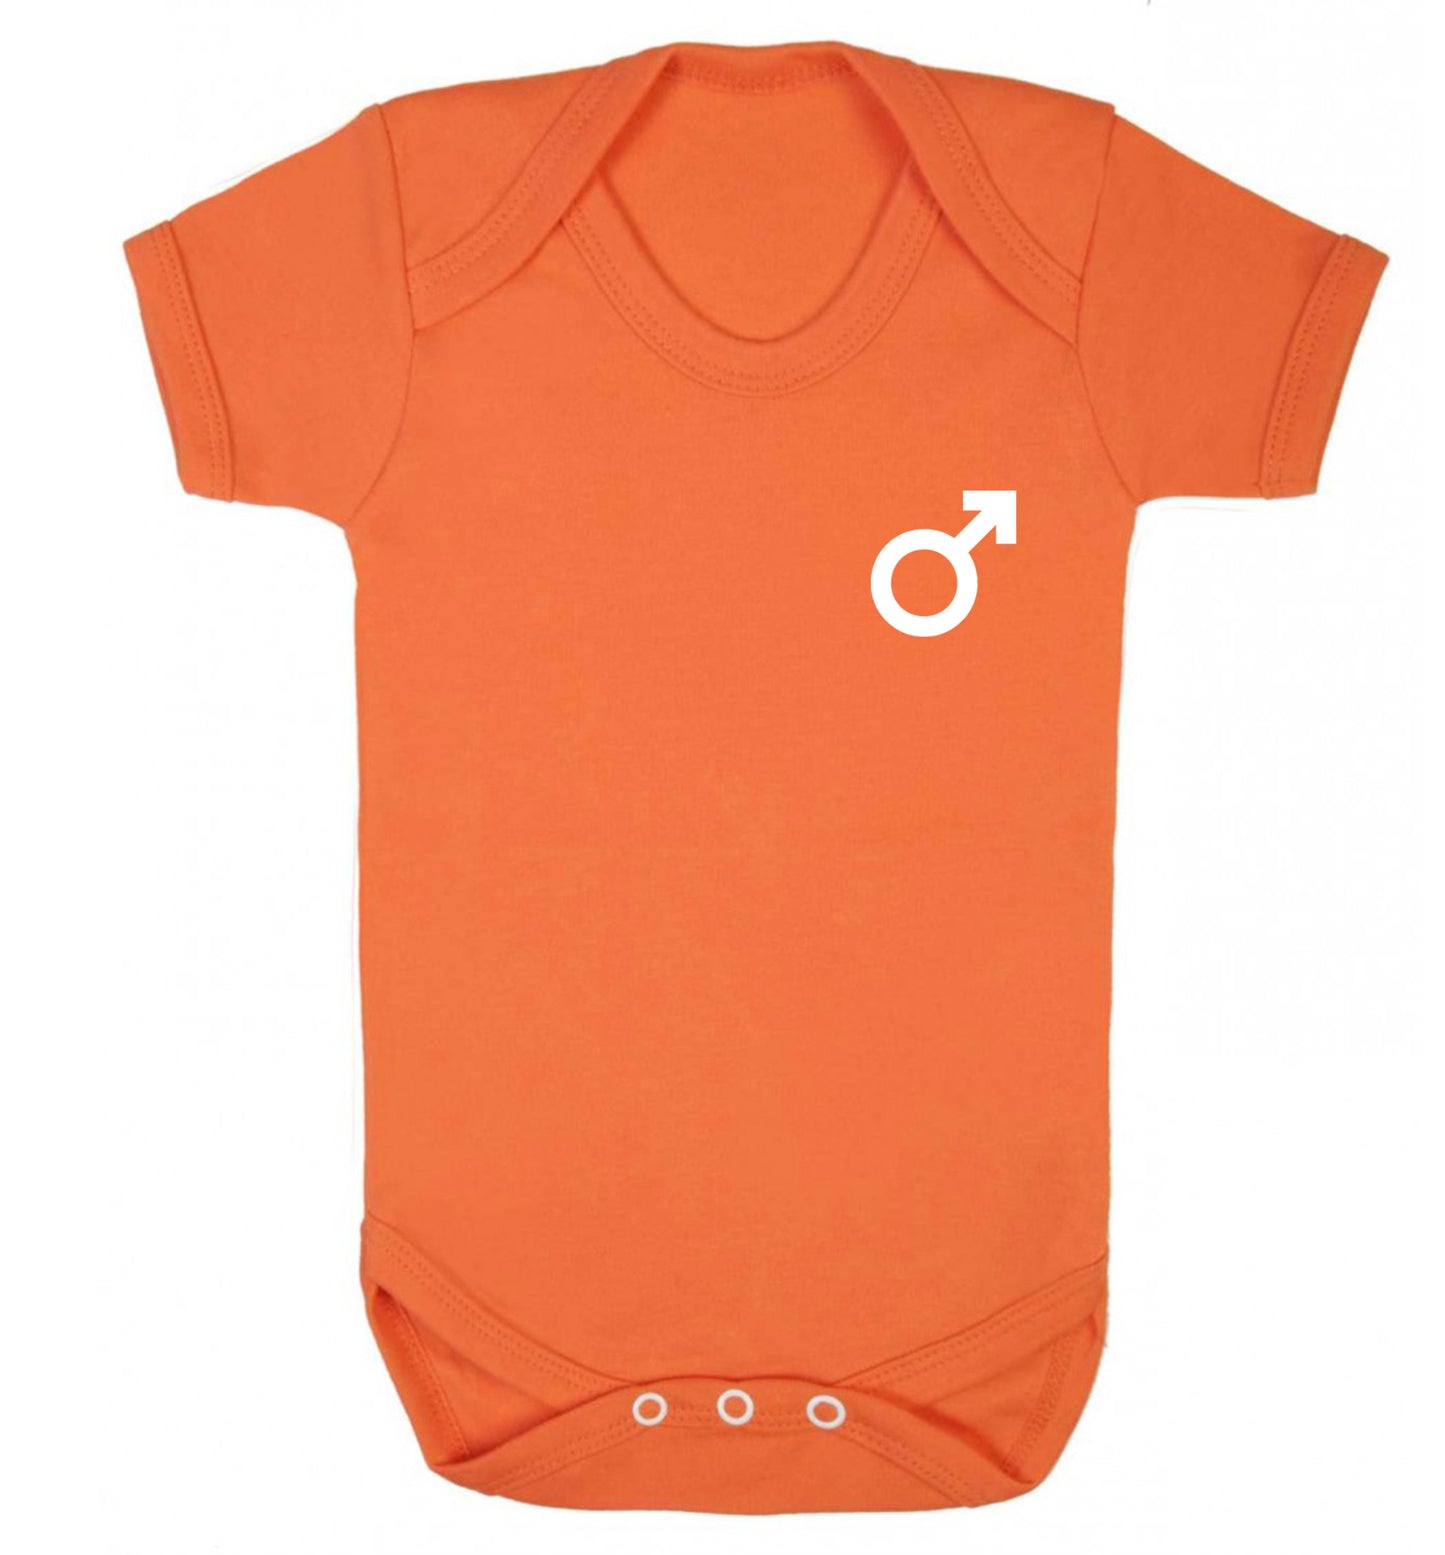 Male symbol pocket Baby Vest orange 18-24 months